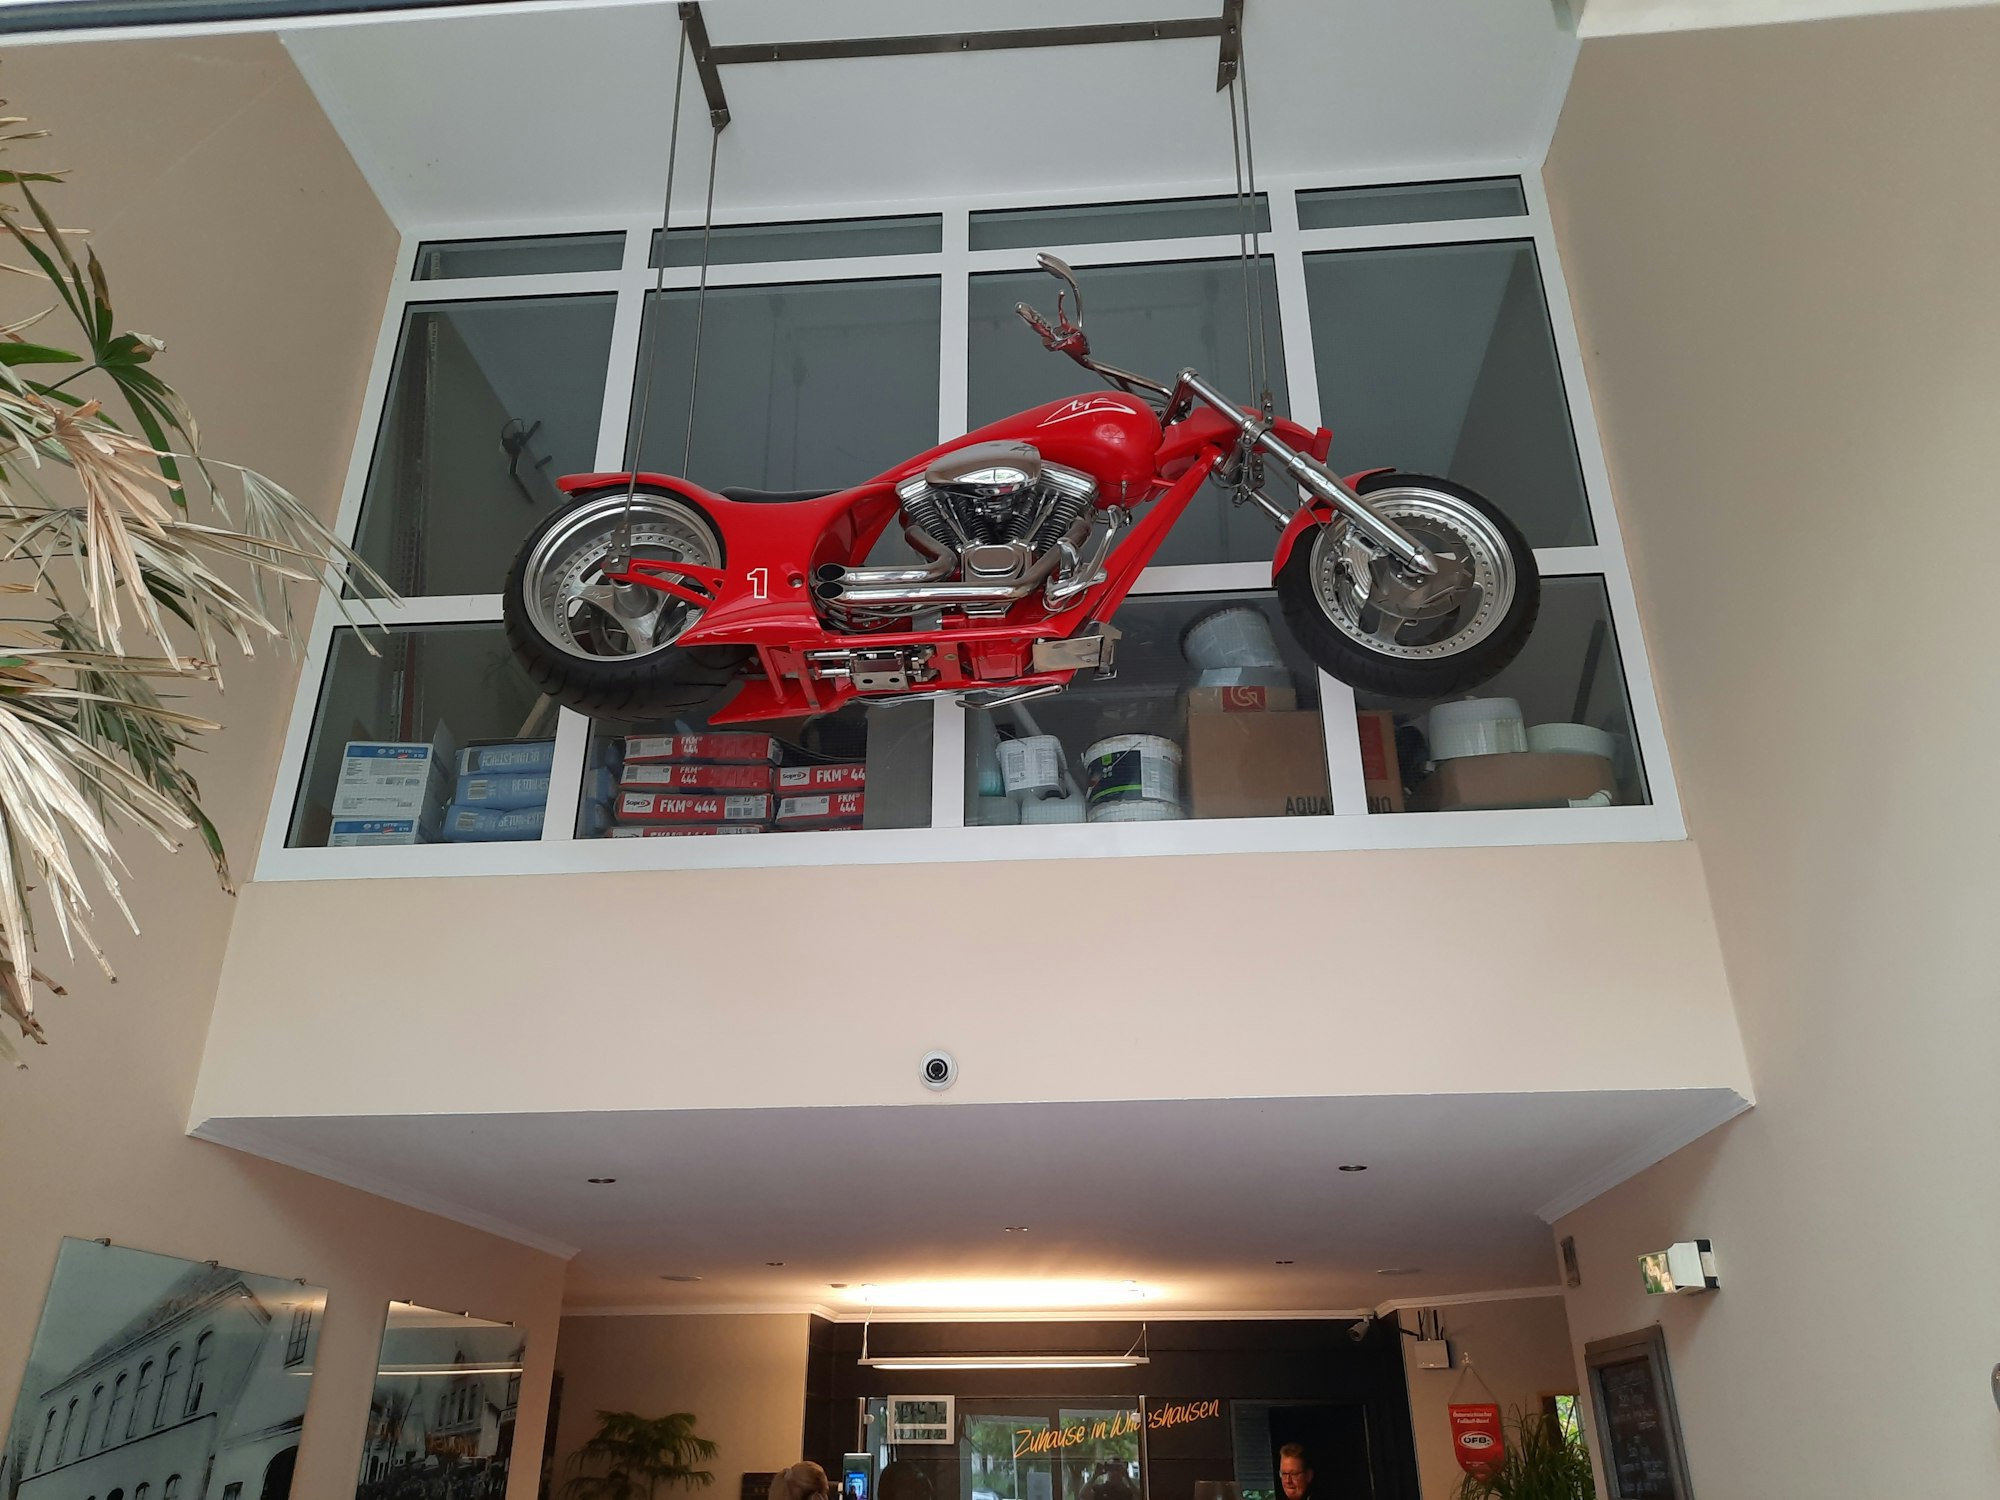 Michaels Schumachers Harley Davidson „MS1 Limited Edition“ an der Decke der Eingangshalle des Hotels „Wildeshauser Hof“